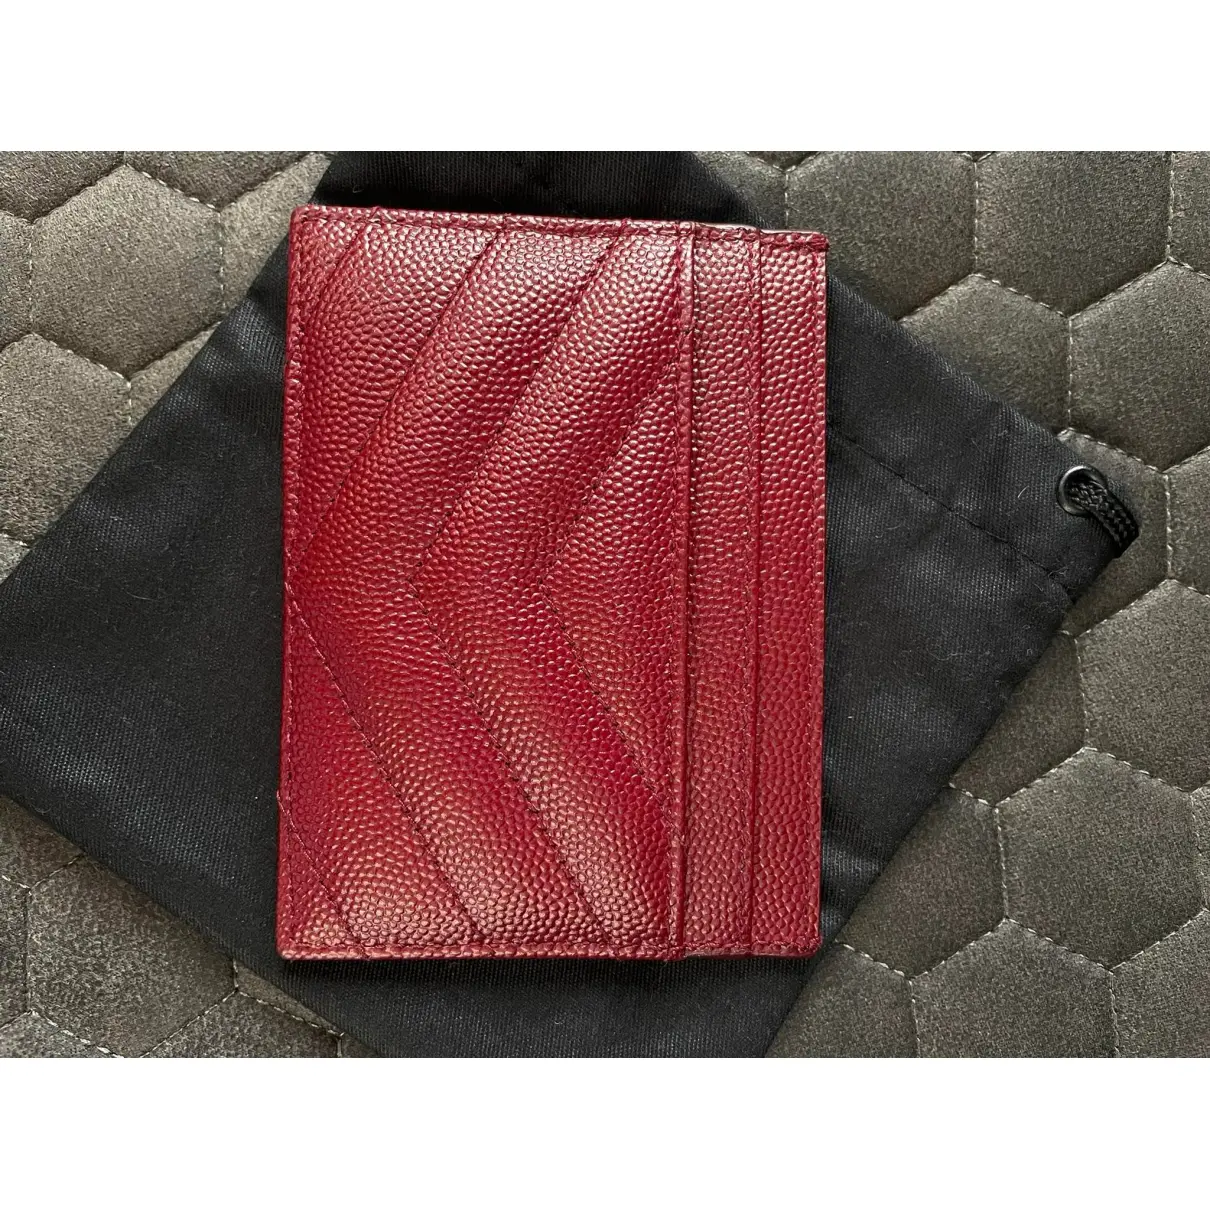 Buy Saint Laurent Monogramme leather purse online